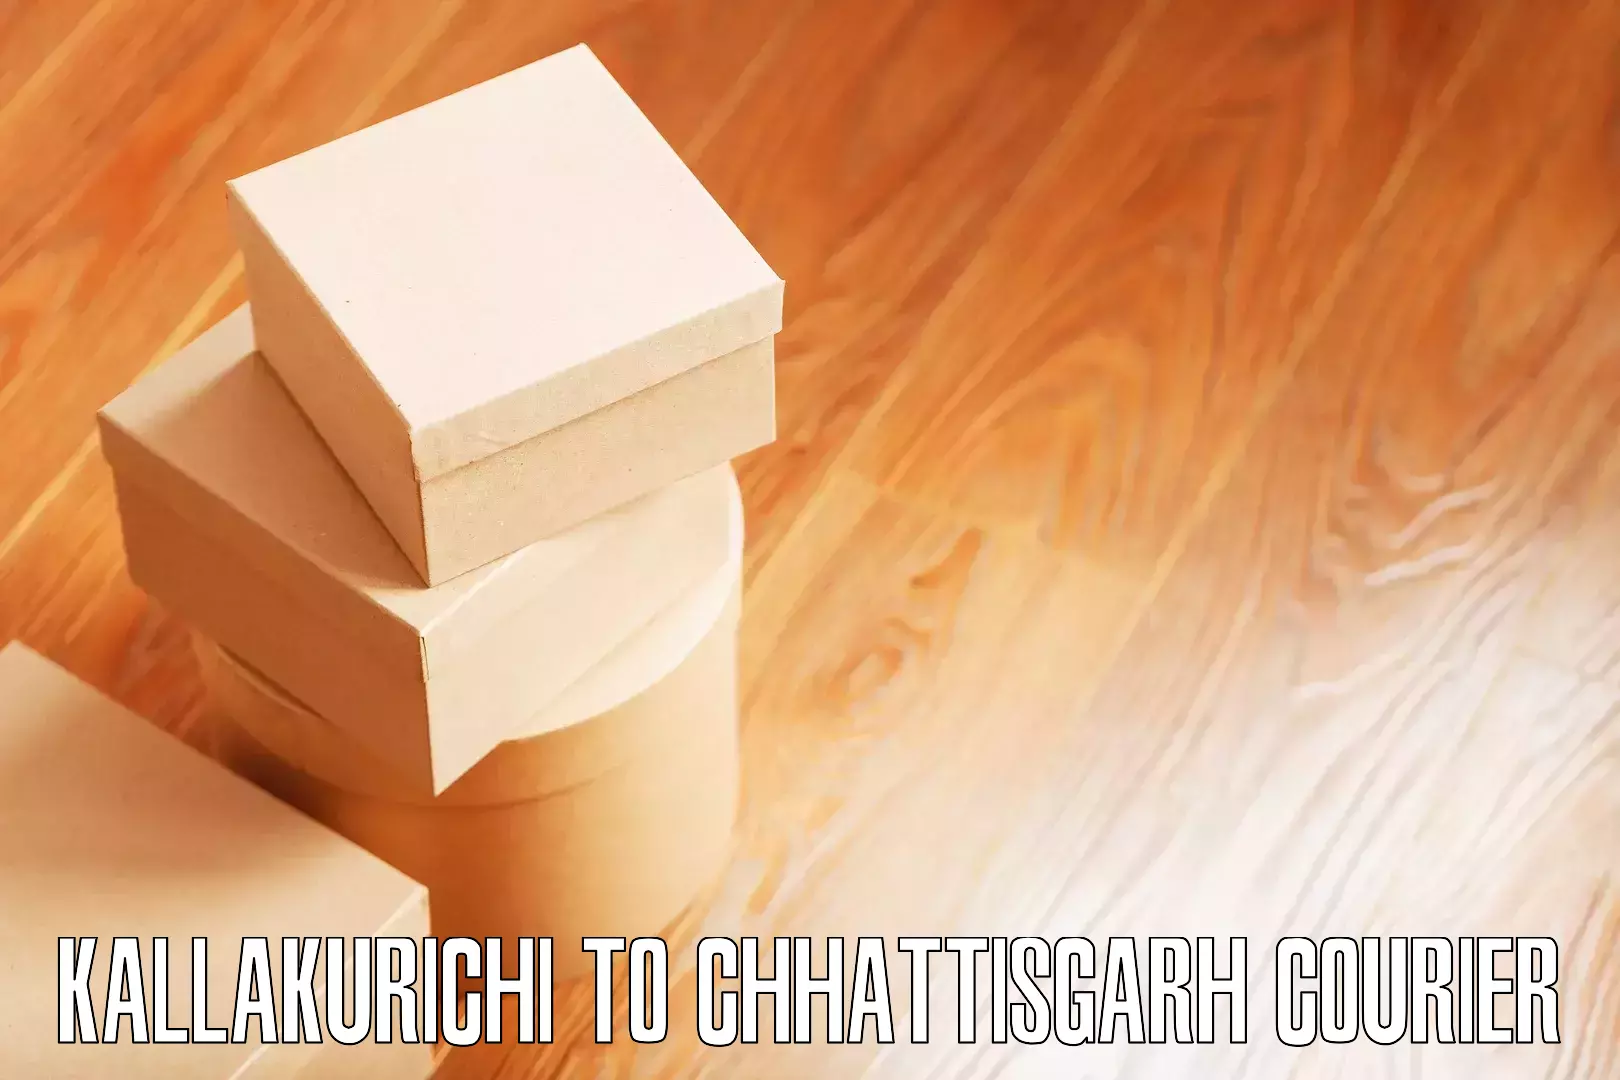 Stress-free furniture moving Kallakurichi to Chirimiri